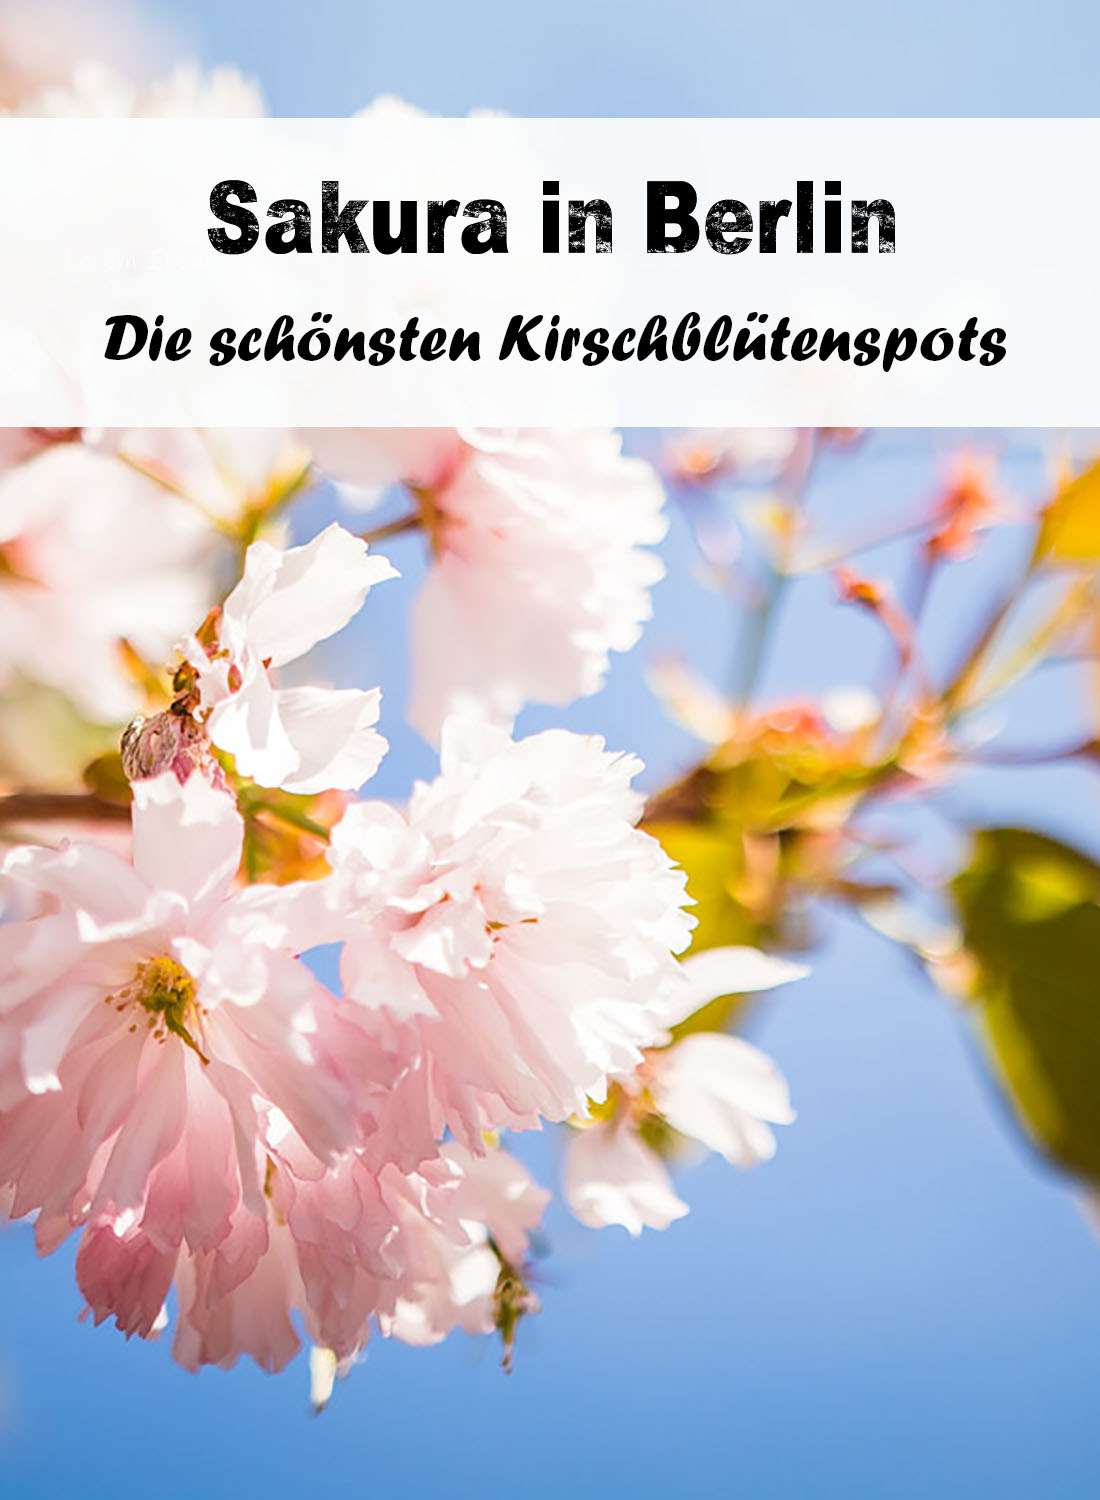 Die schönsten Kirschblütenspots in Berlin